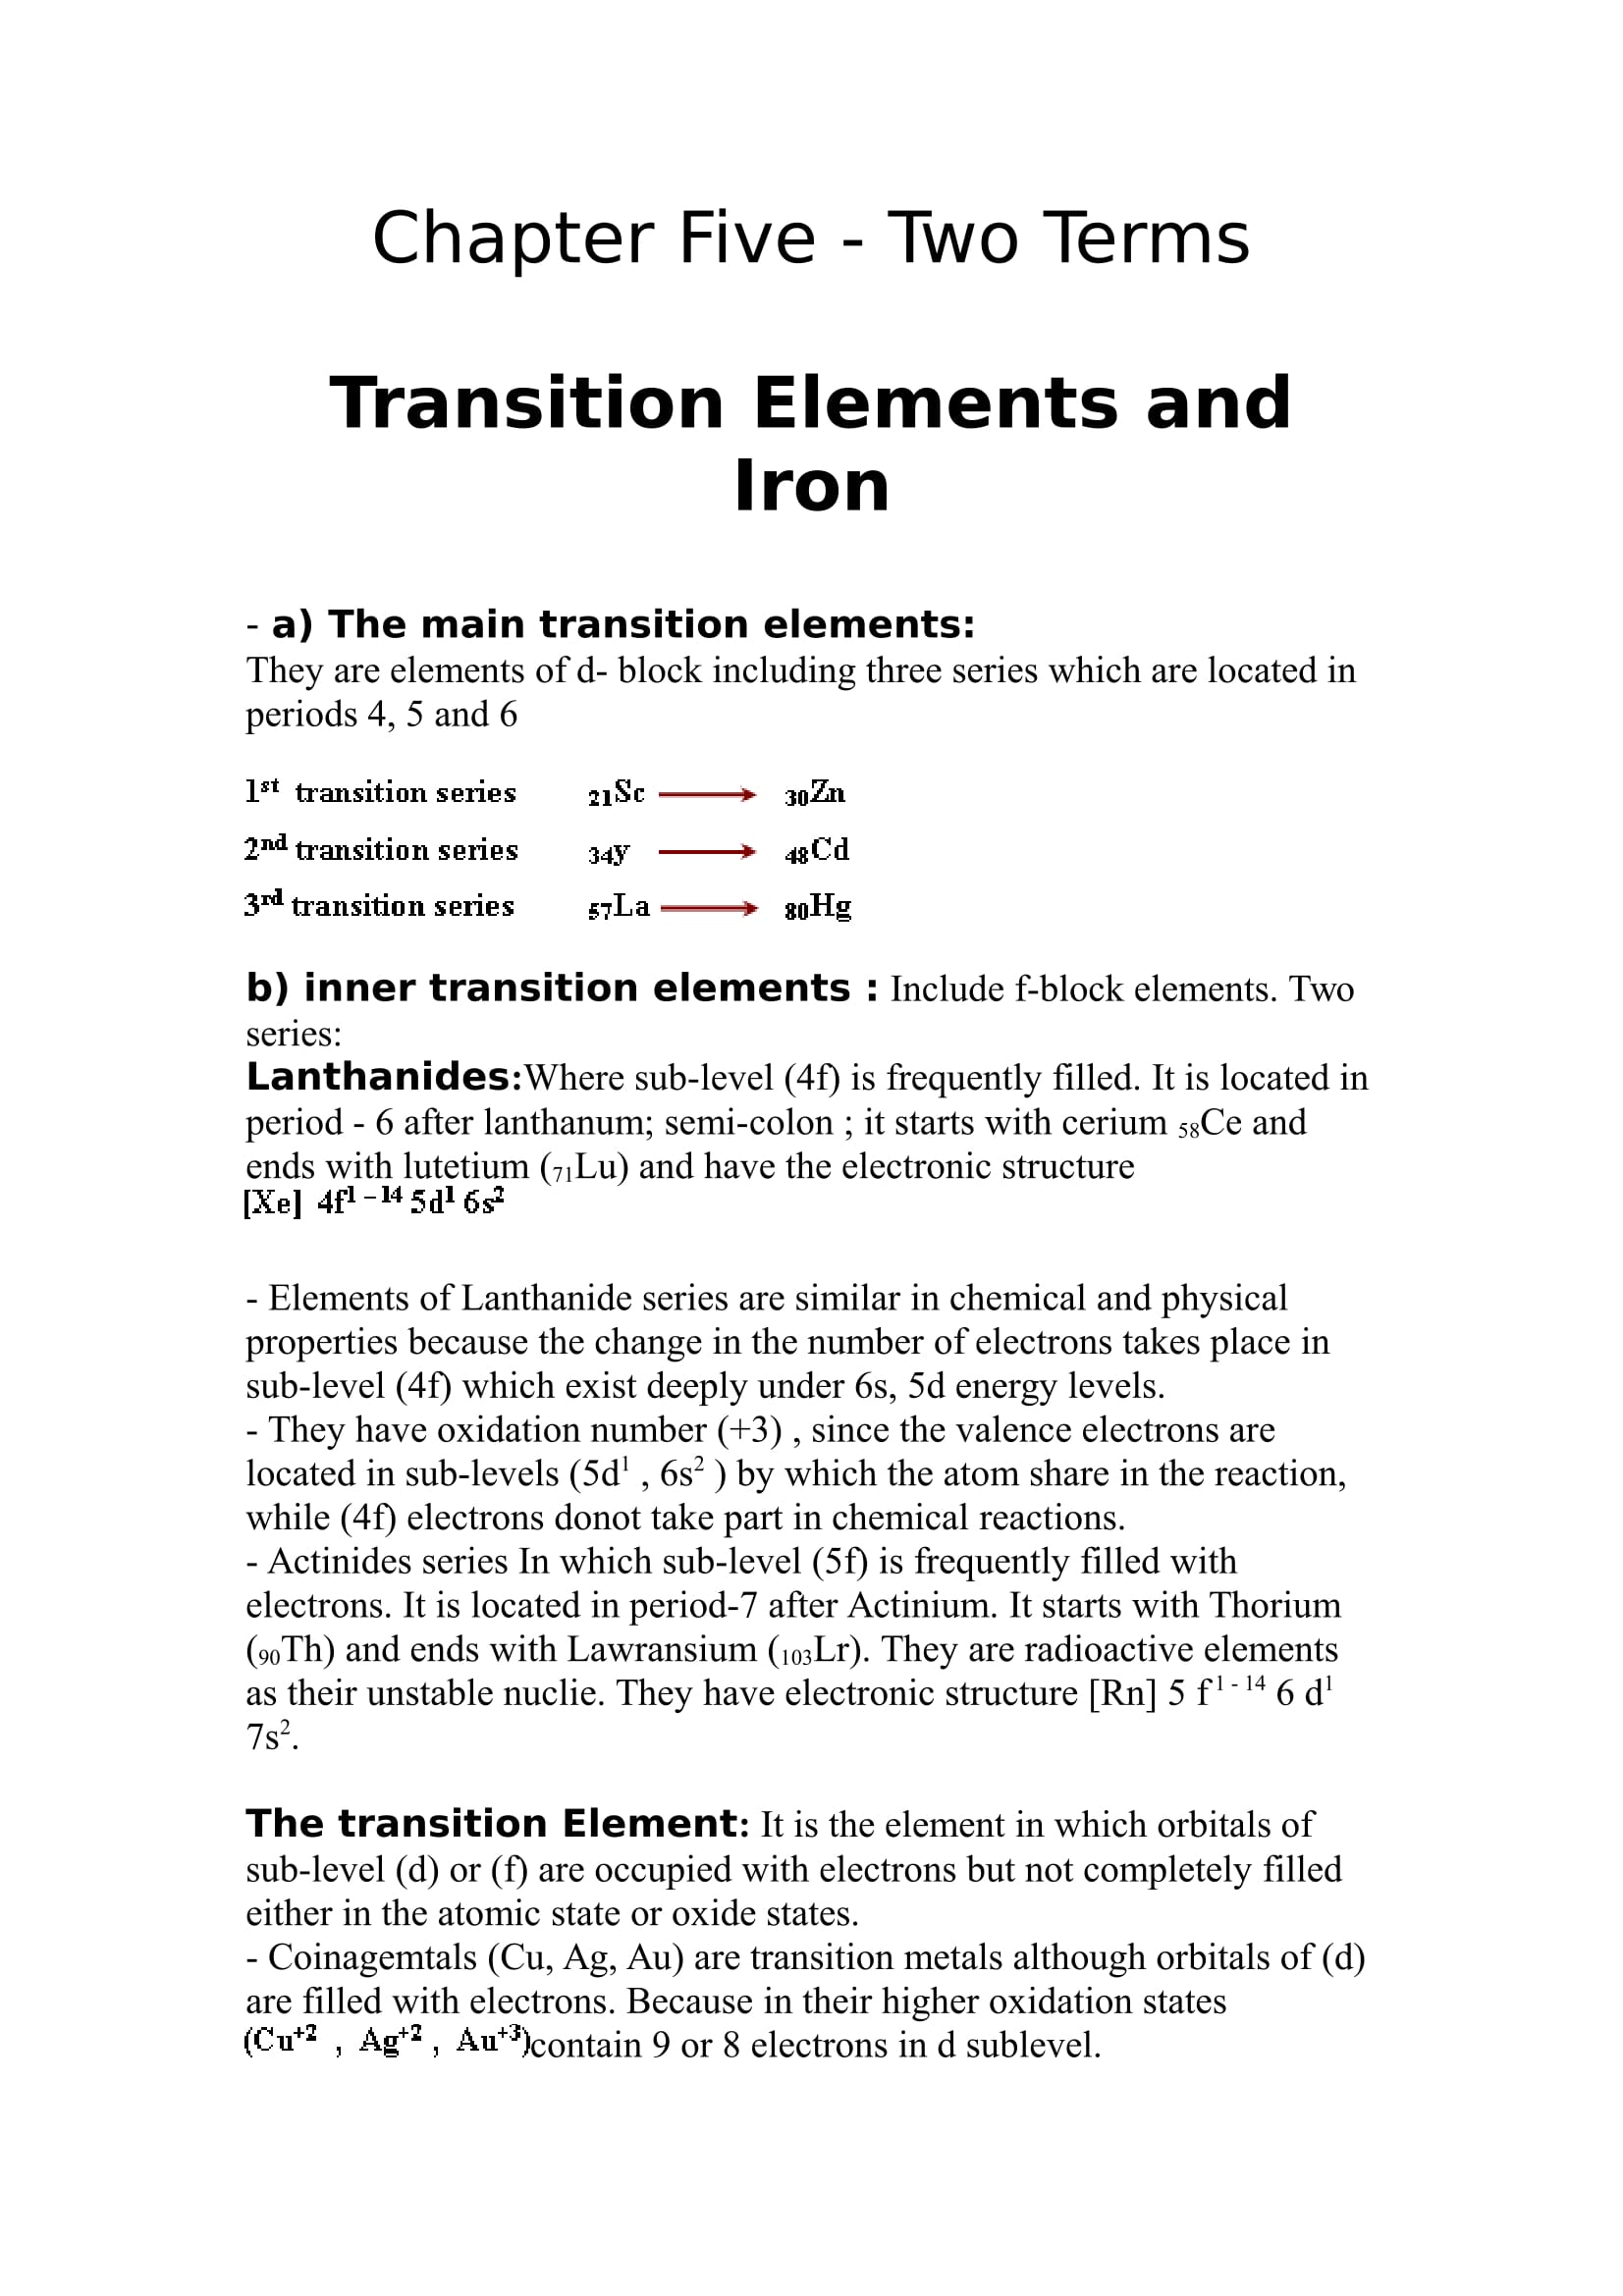 ملخص واسئلة واختبارات على Chapter 5 فى Chemistry للصف الثانى الثانوى اللغات الترم الاول